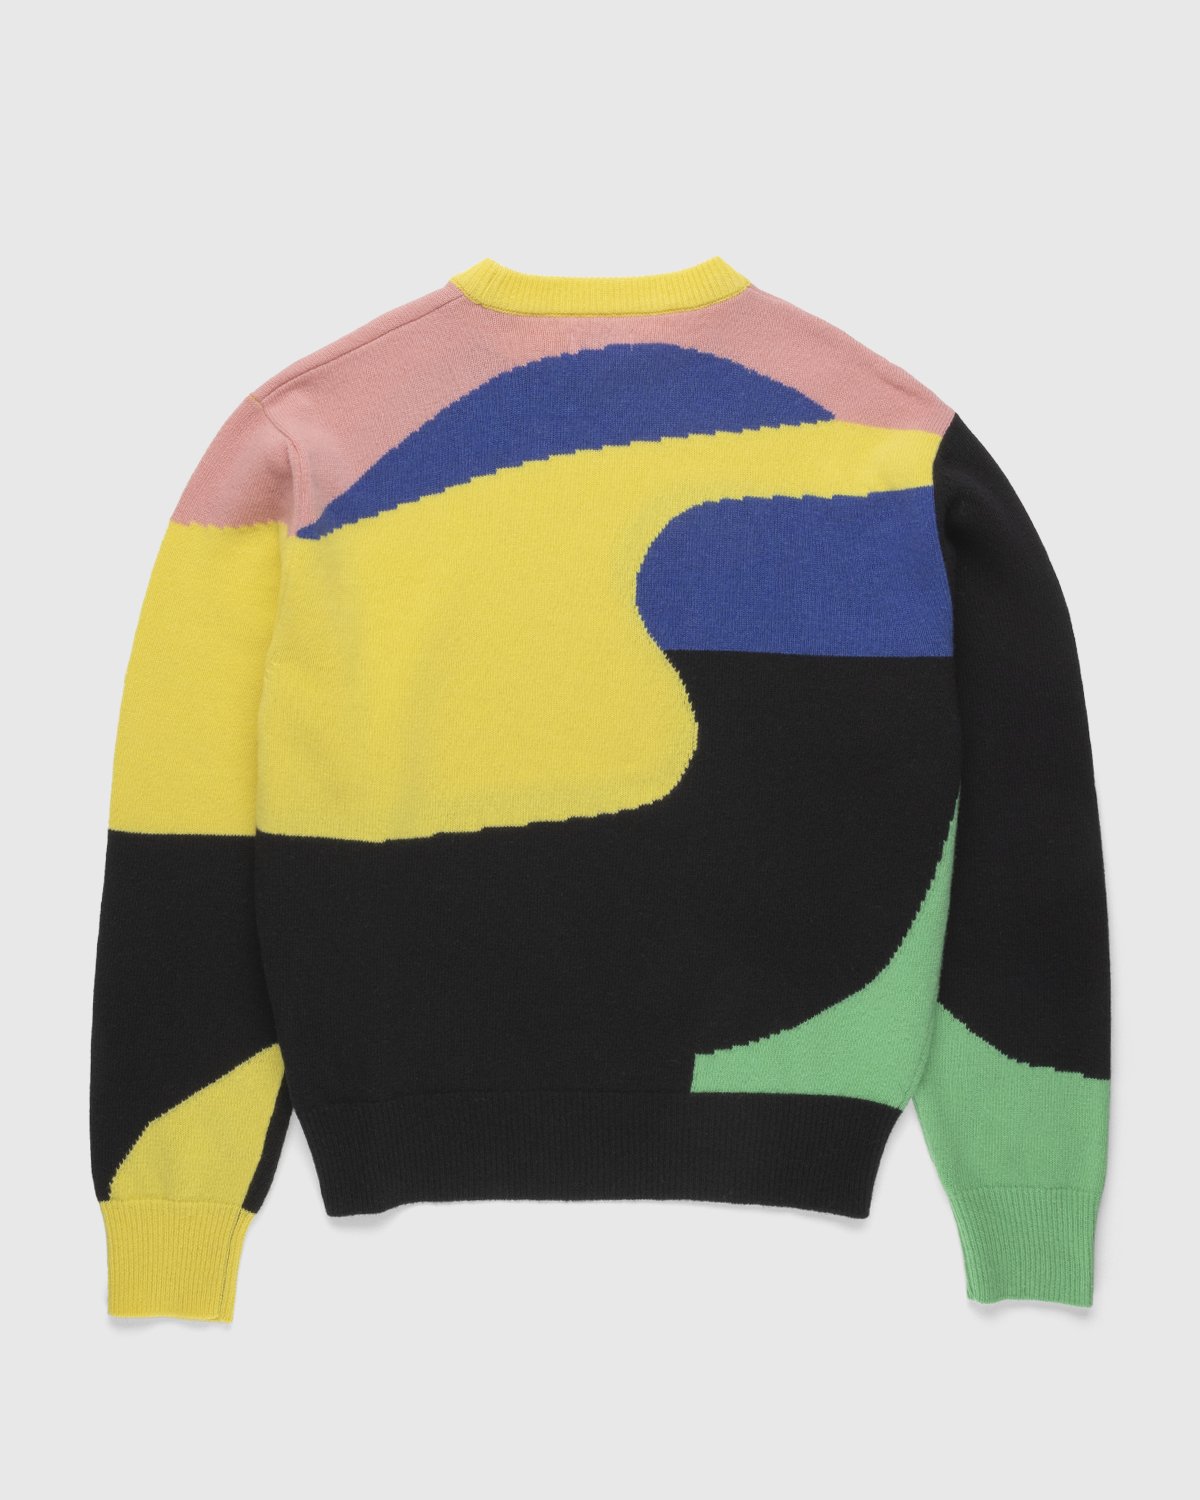 Honey Fucking Dijon x Eli Avaf - Crewneck Knitted Sweater - Clothing - Multi - Image 2